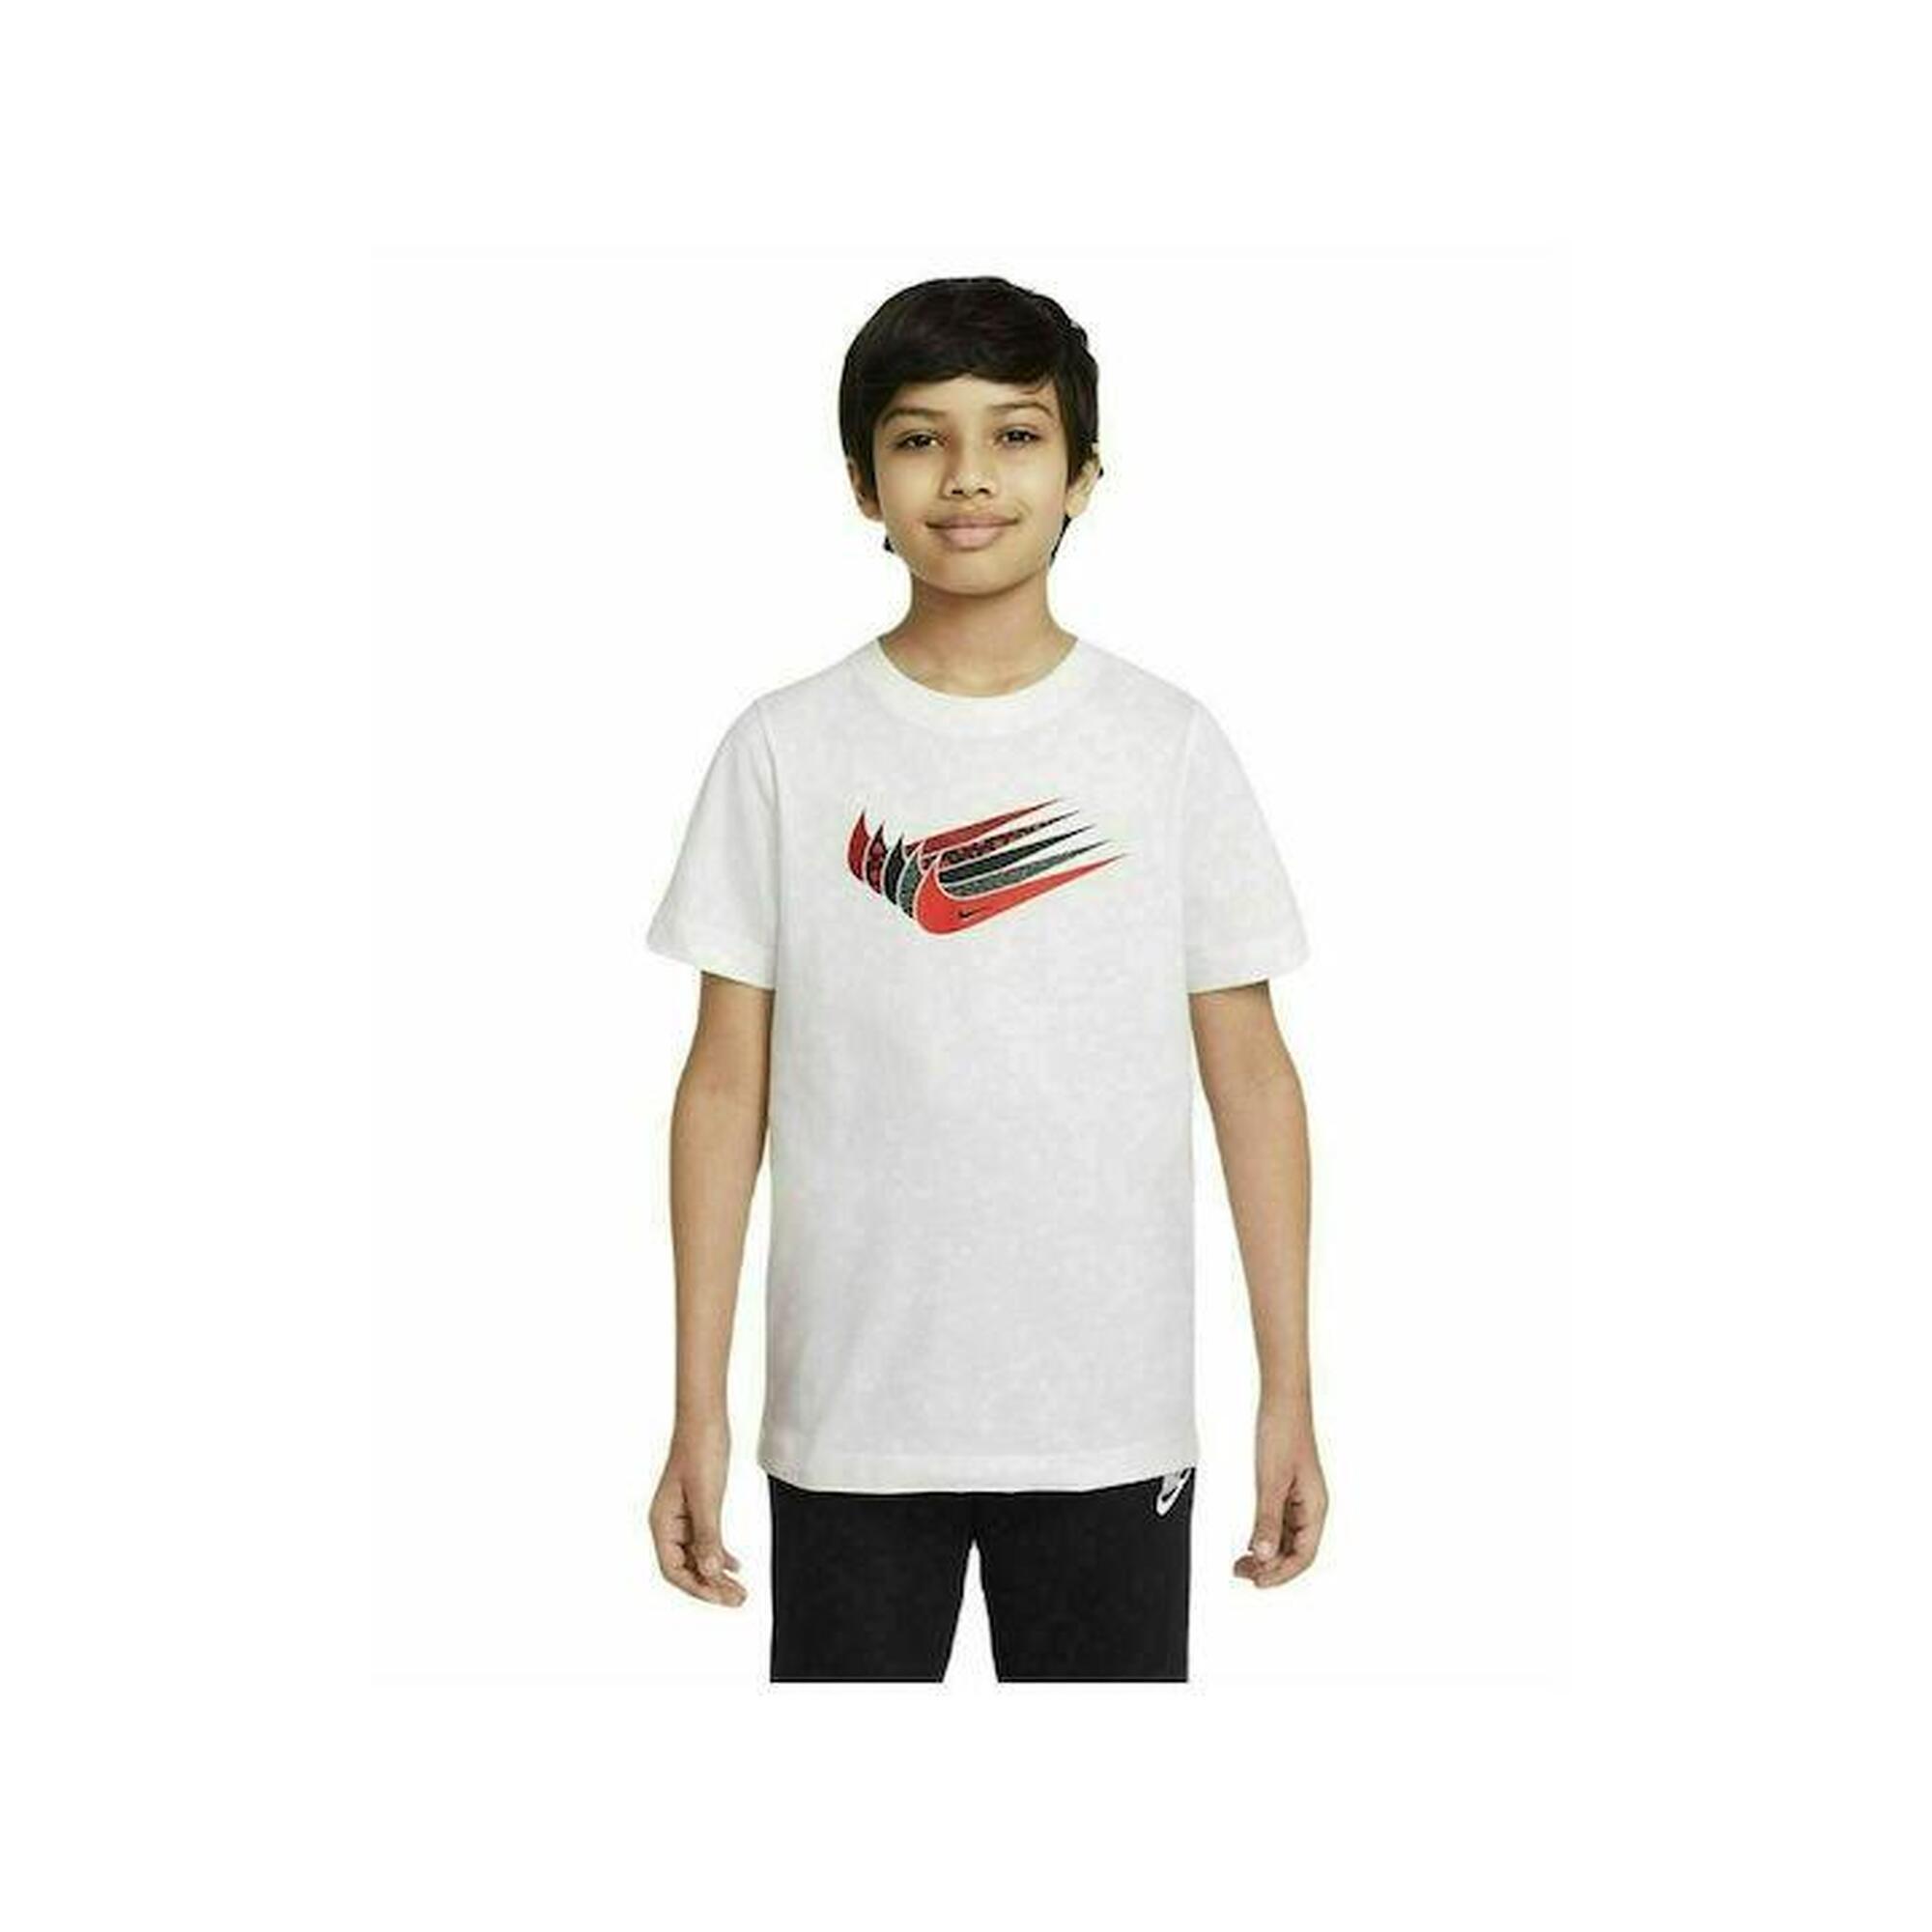 T-shirt ragazzo nike sportswear tee core bianco